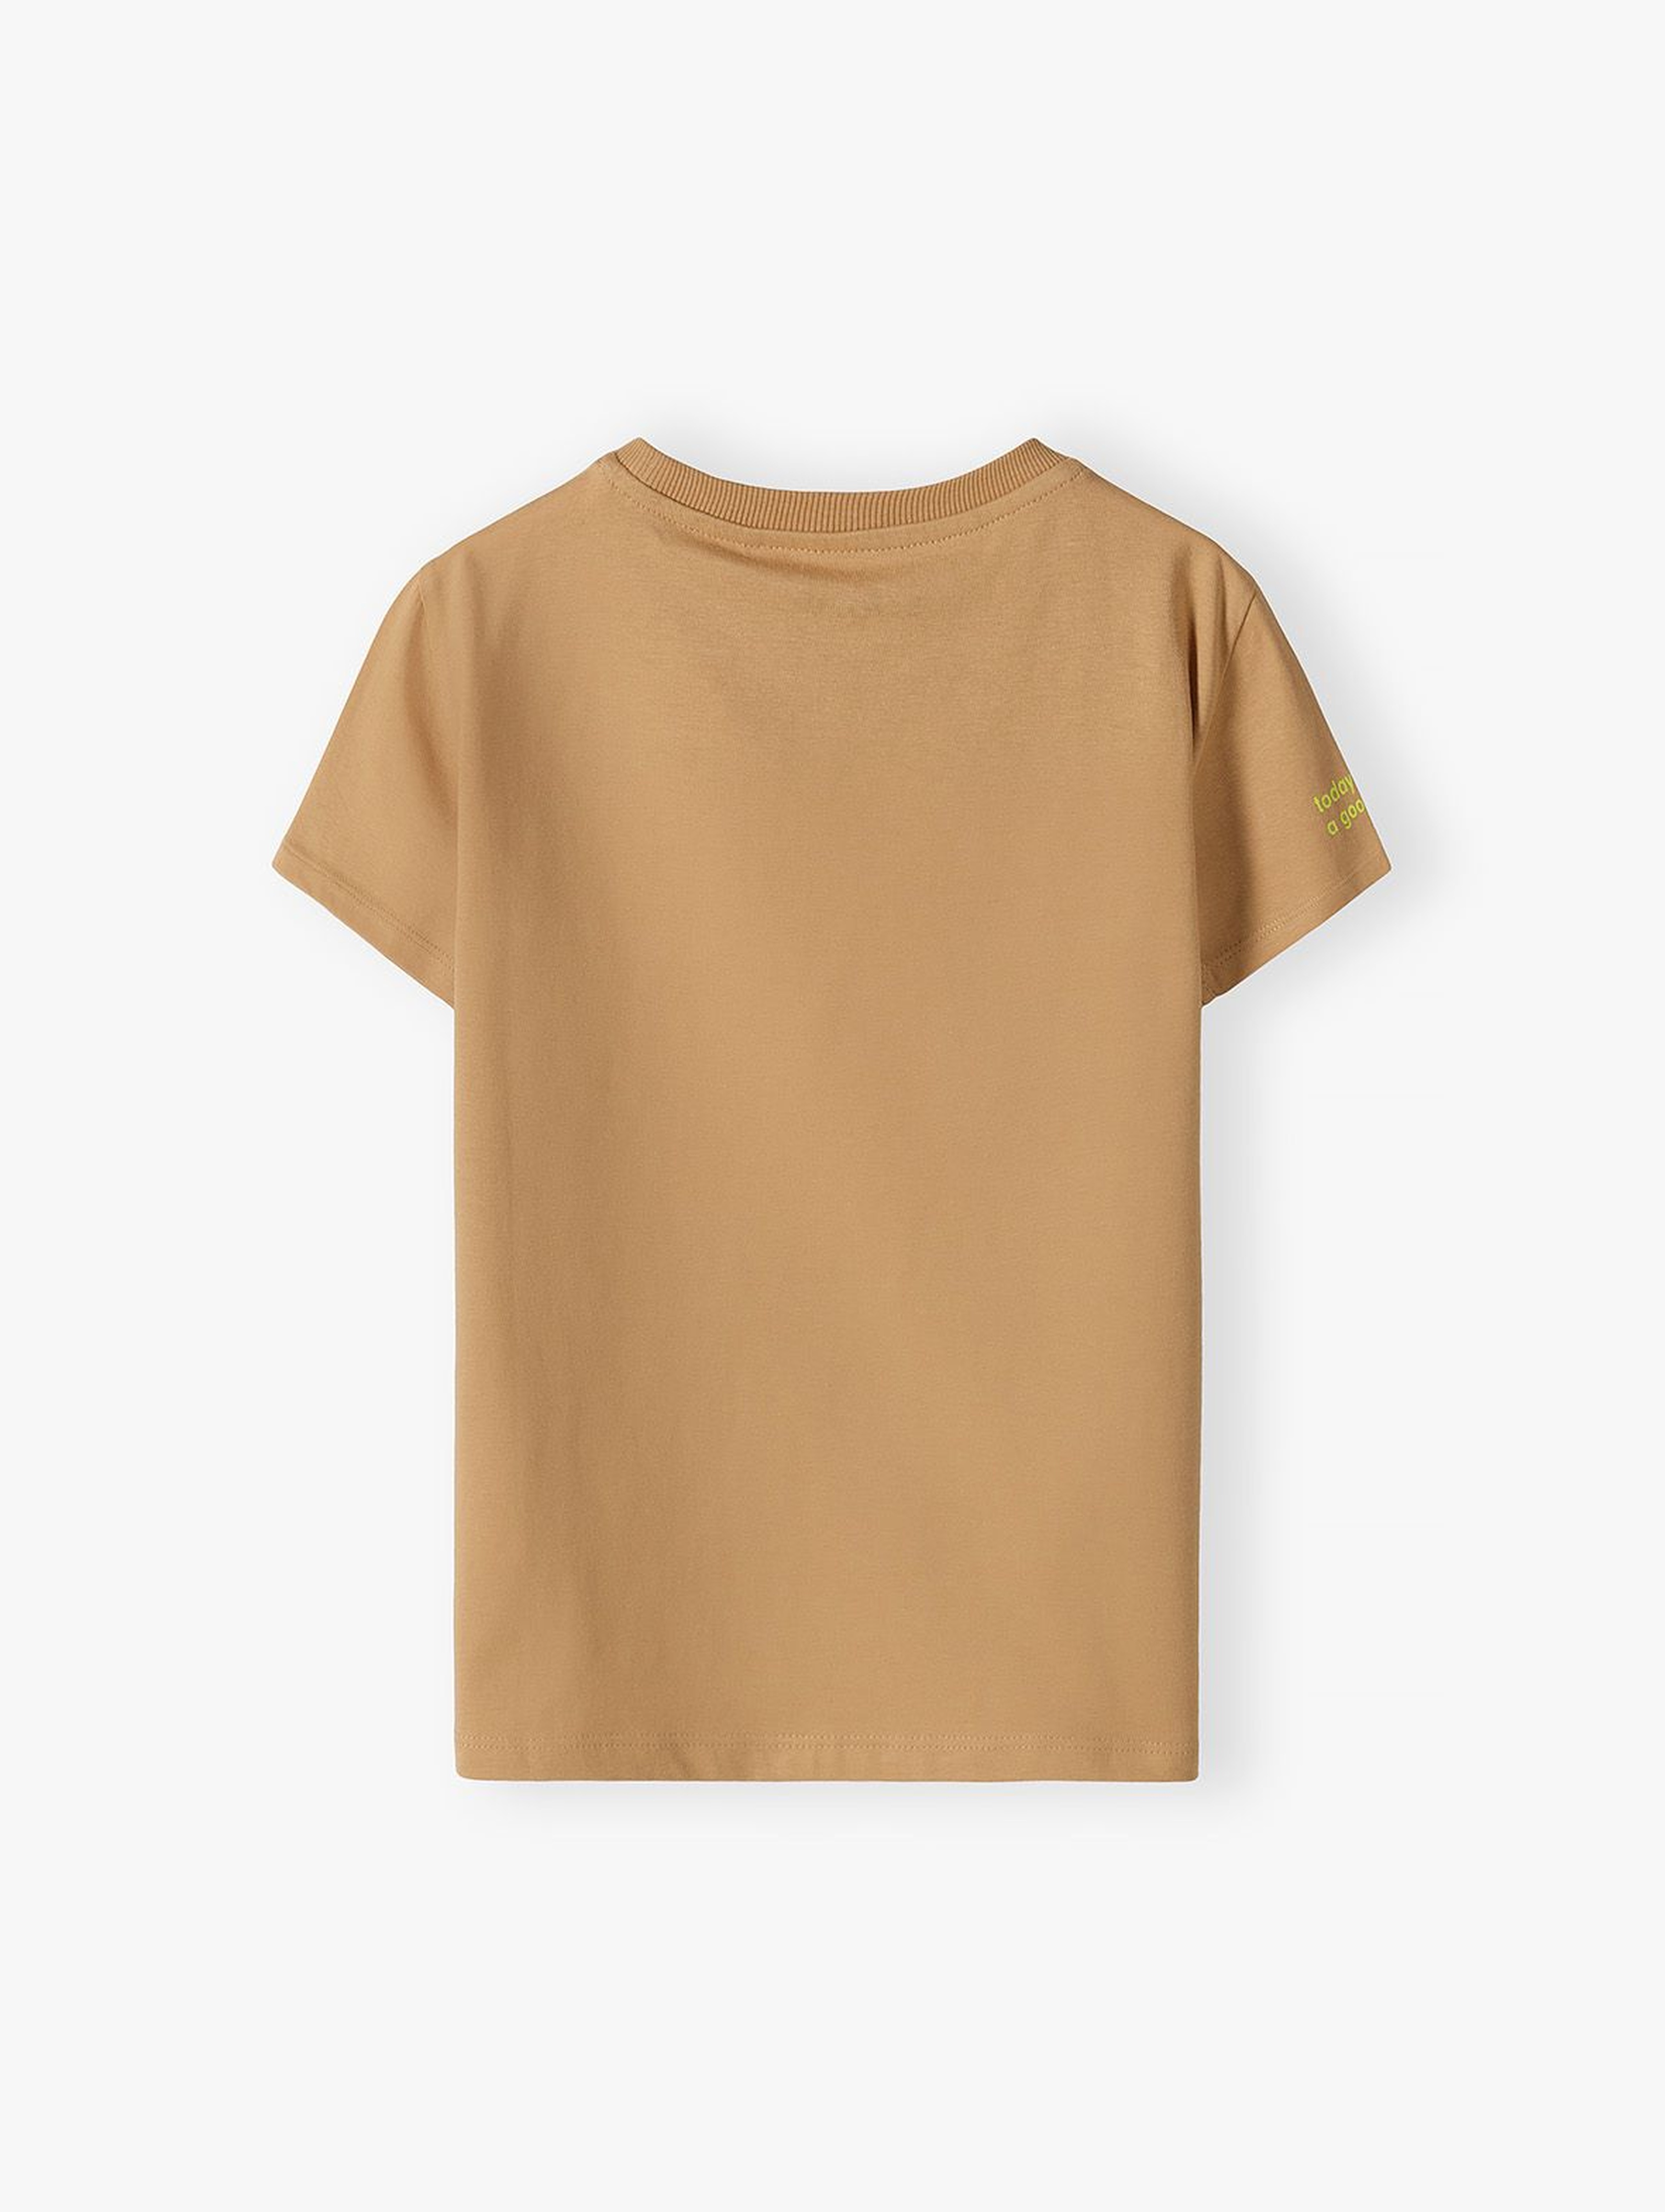 Beżowy t-shirt chłopięcy bawełniany- choose happiness